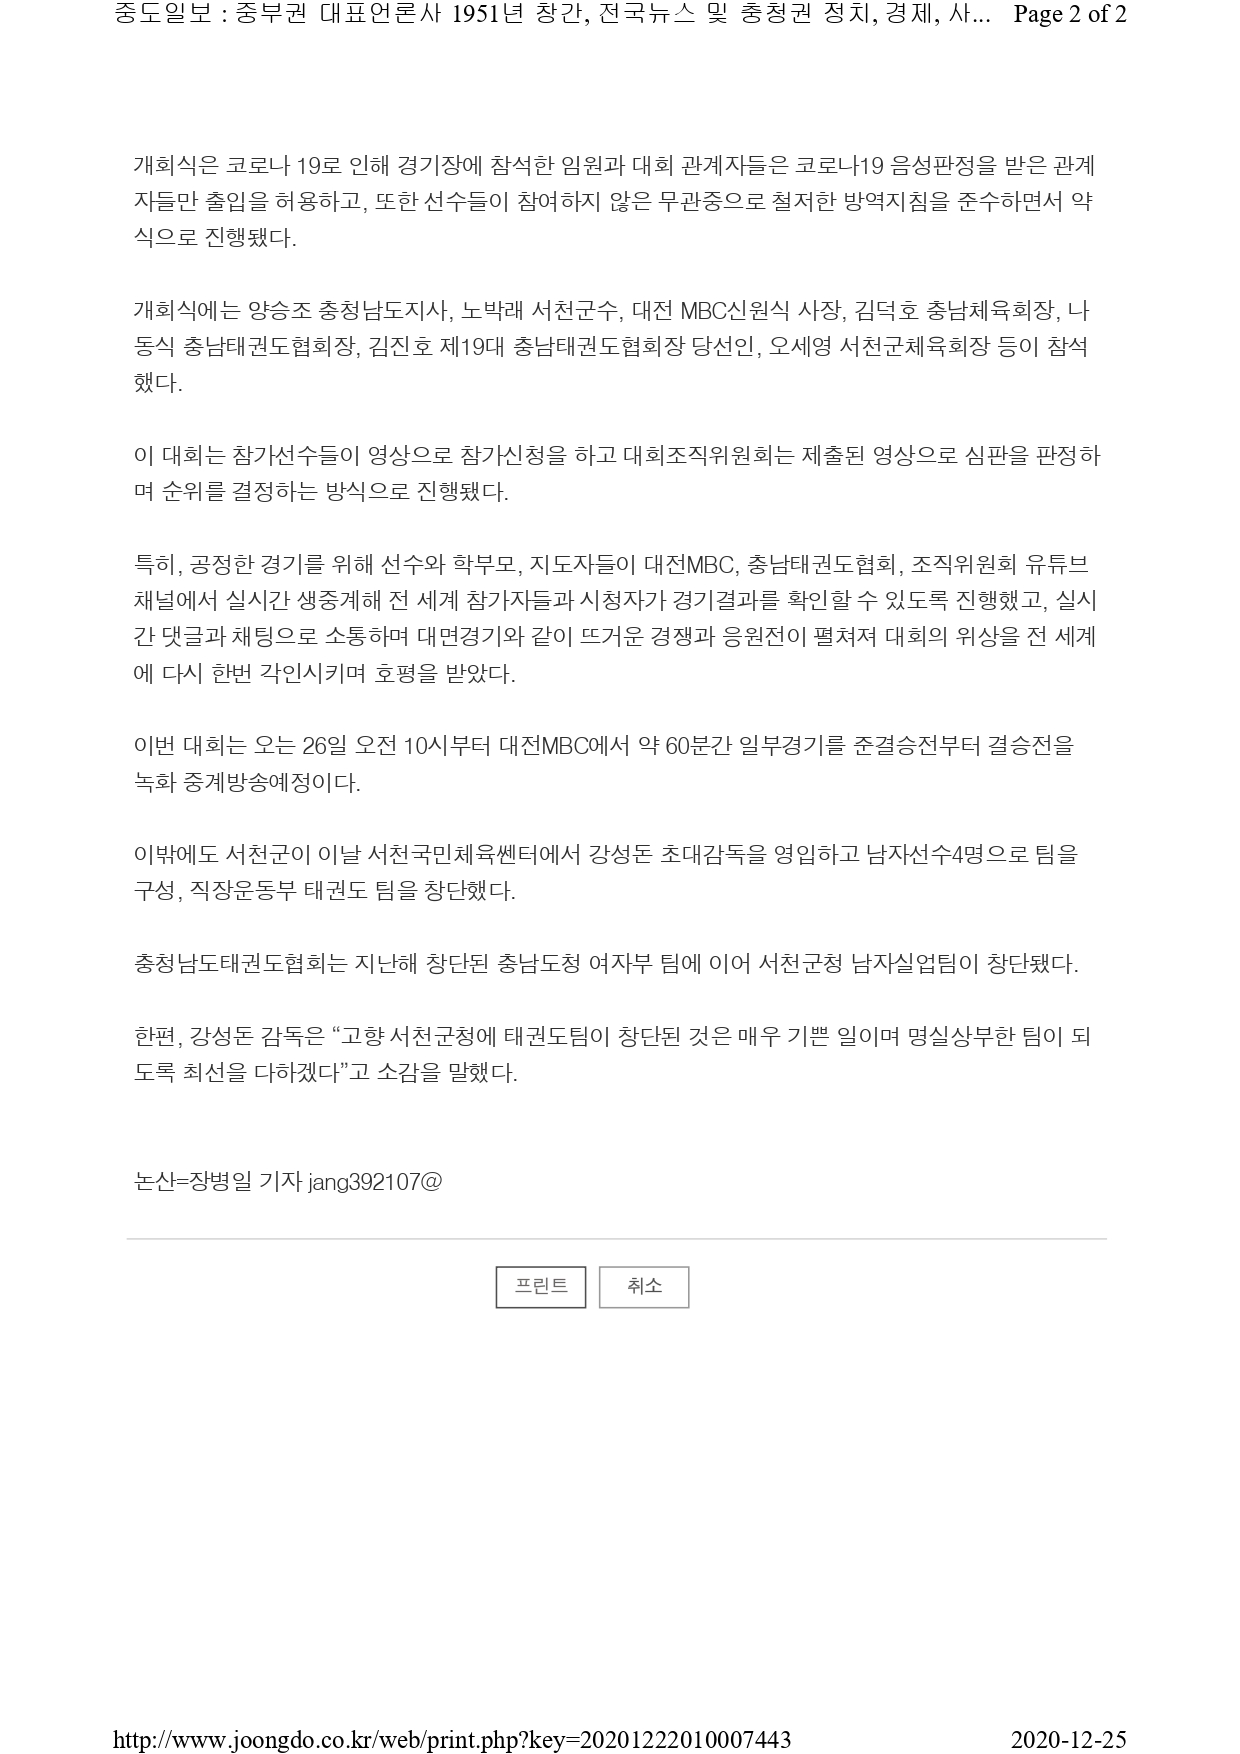 [중도일보] 온라인 2020 대전MBC배 국제오픈태권도대회 성료!_page-0002.jpg